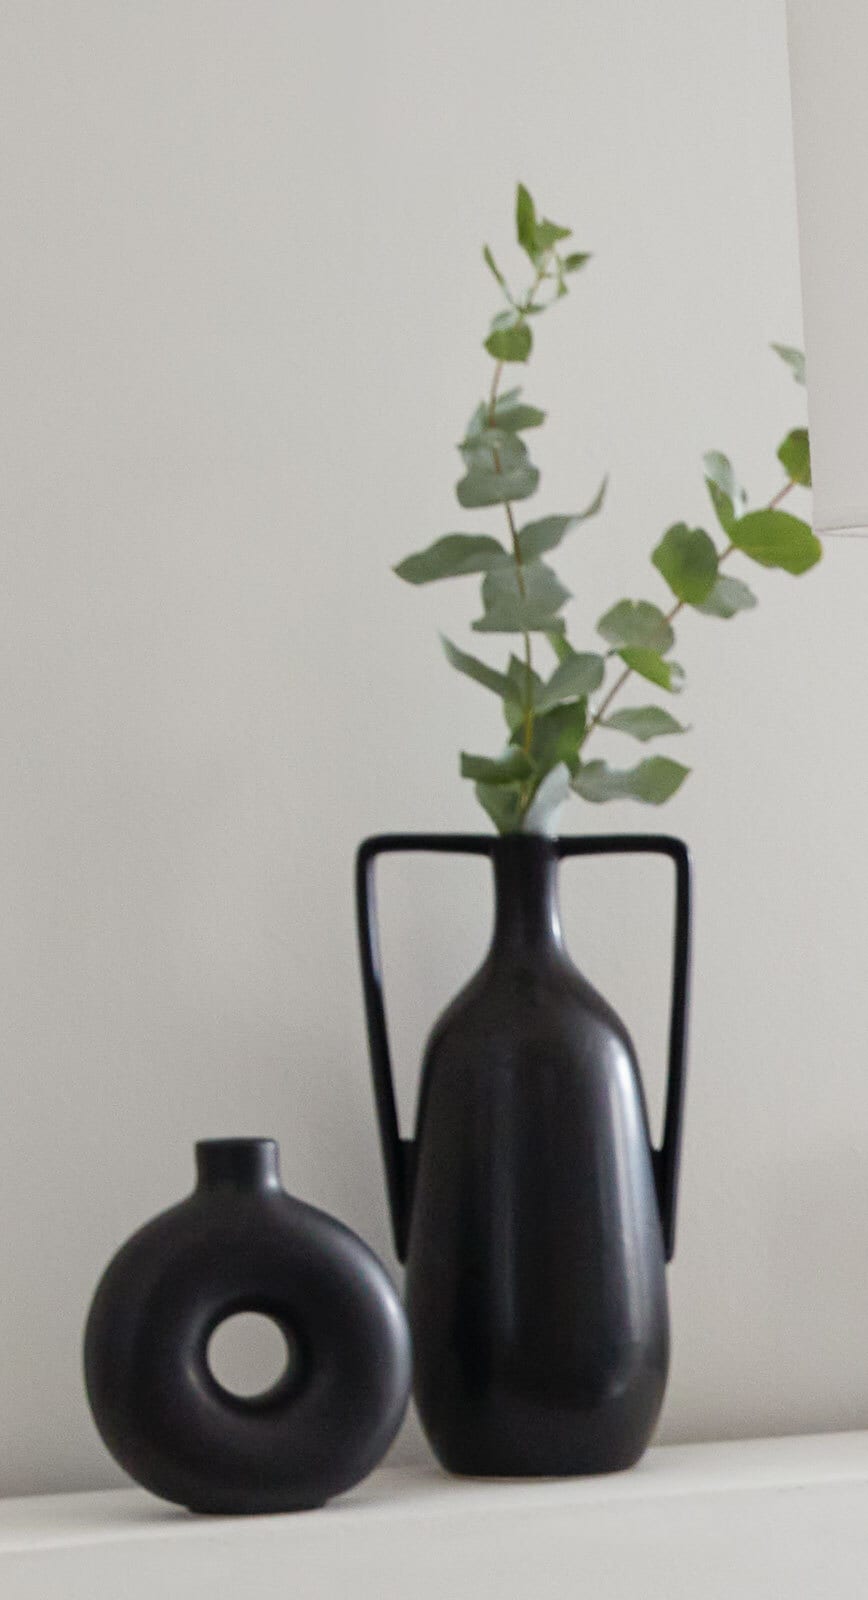 Vase MELAX 35 cm schwarz